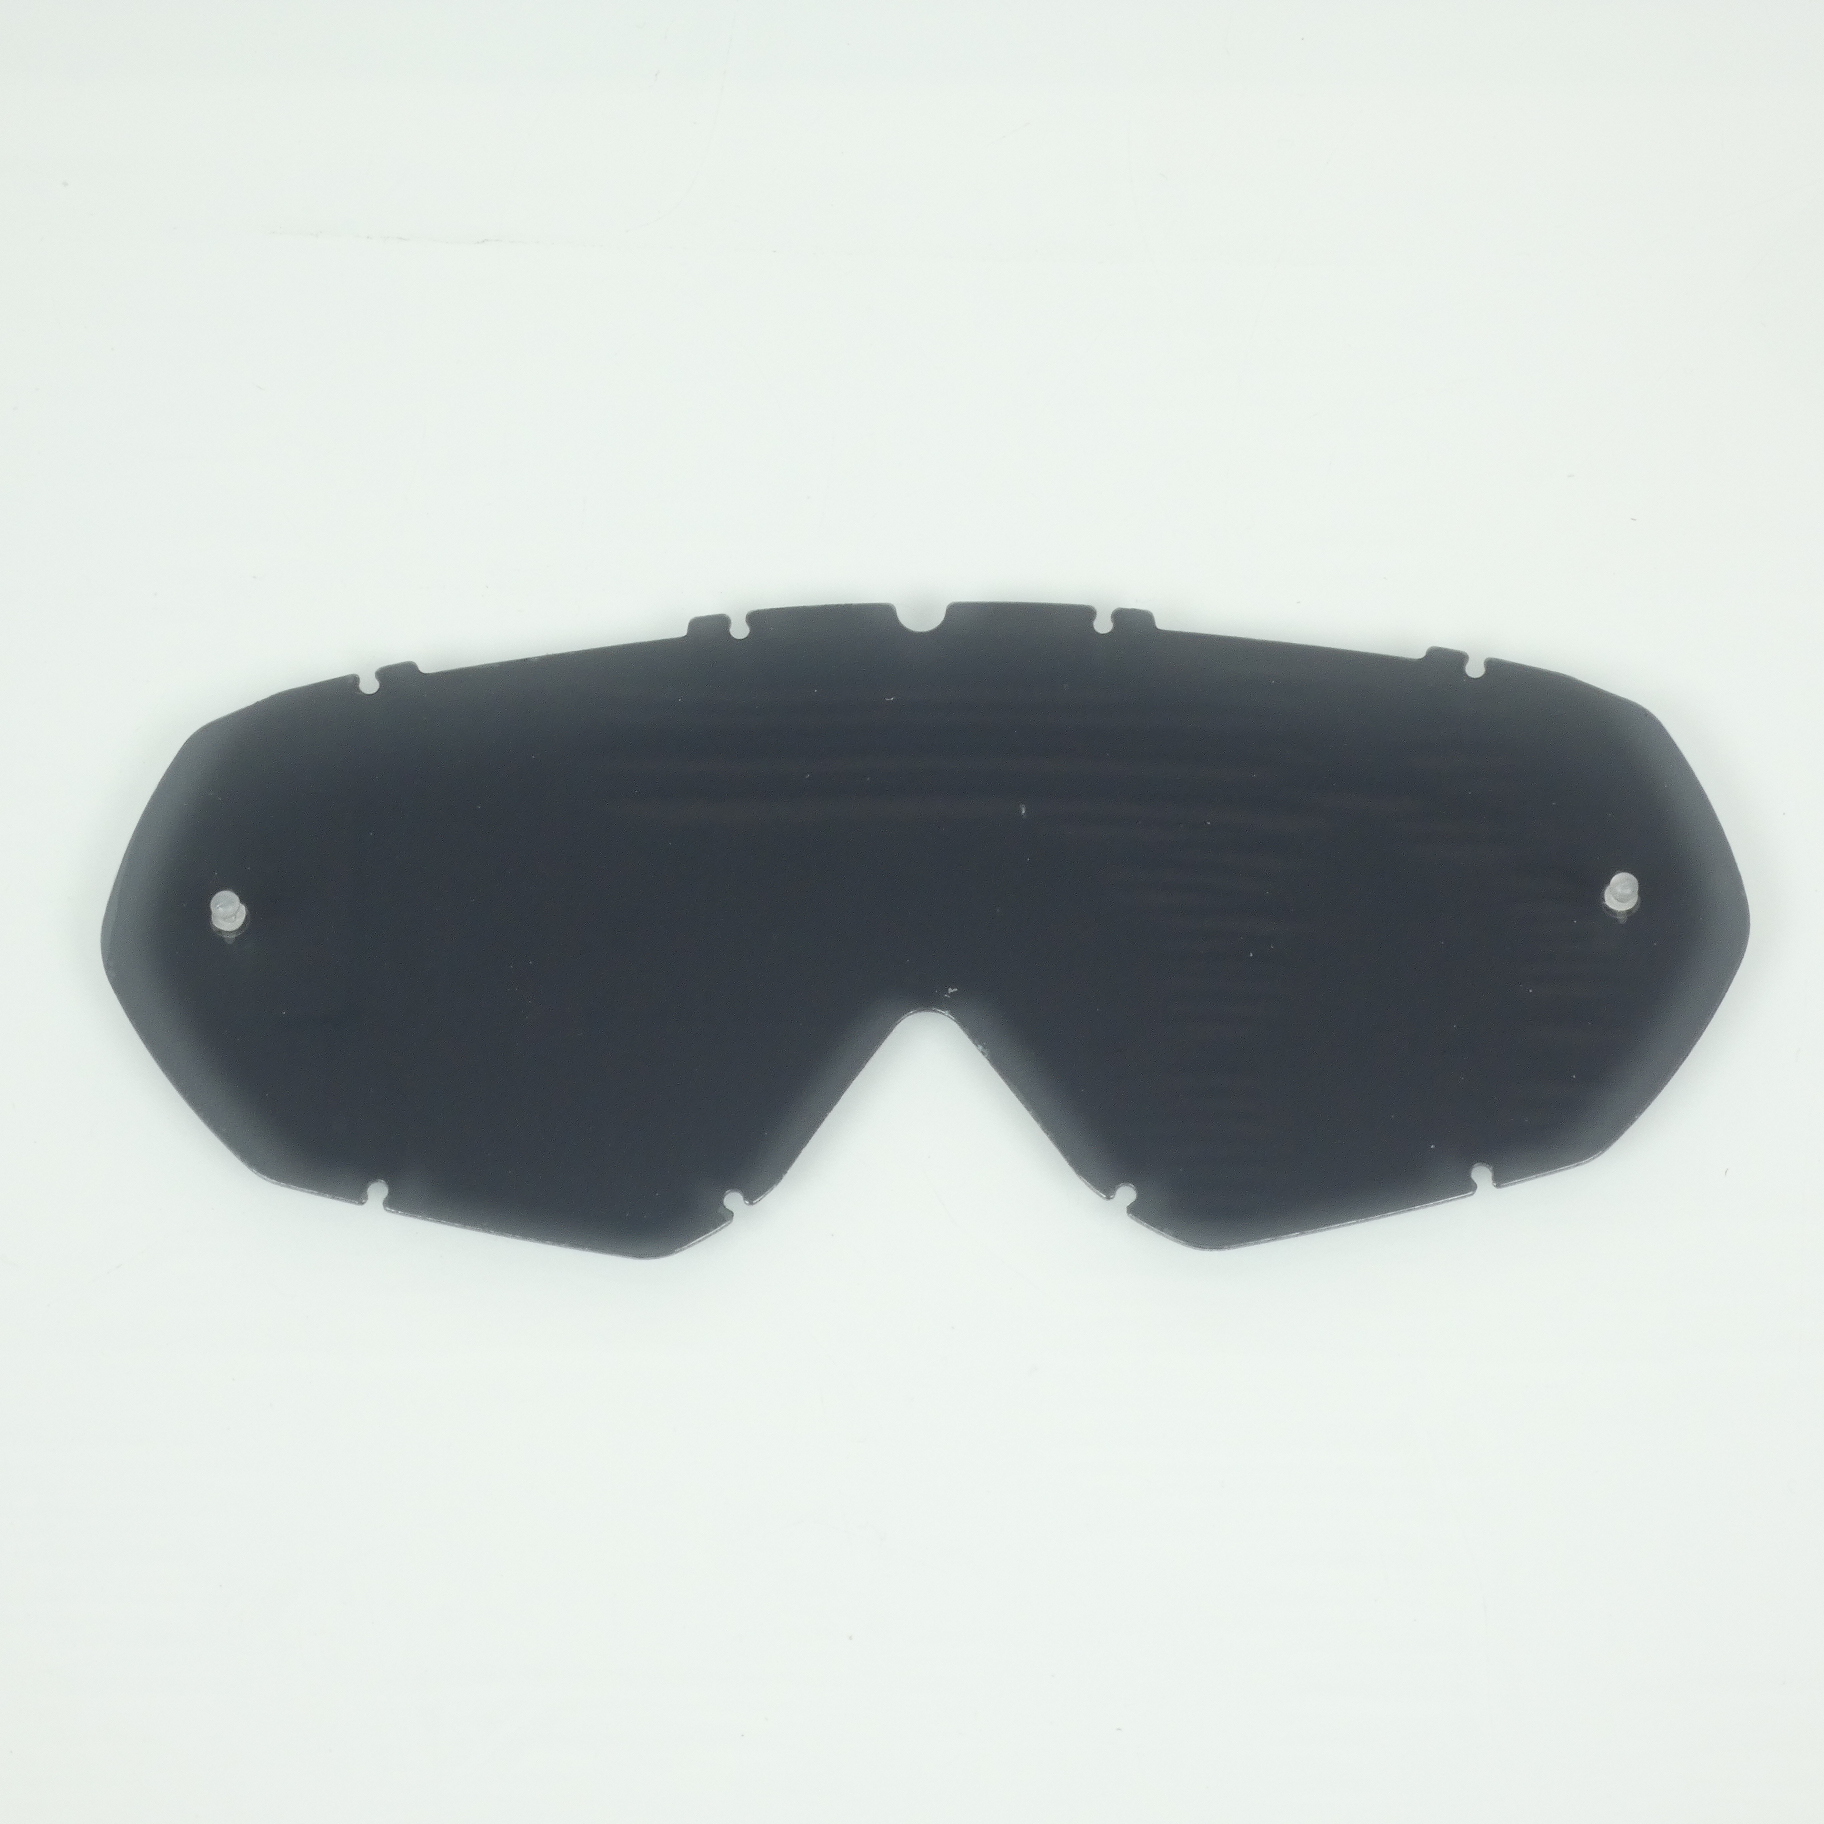 Écran simple Swaps smoke grey compatible tear off pour masque lunette moto cross